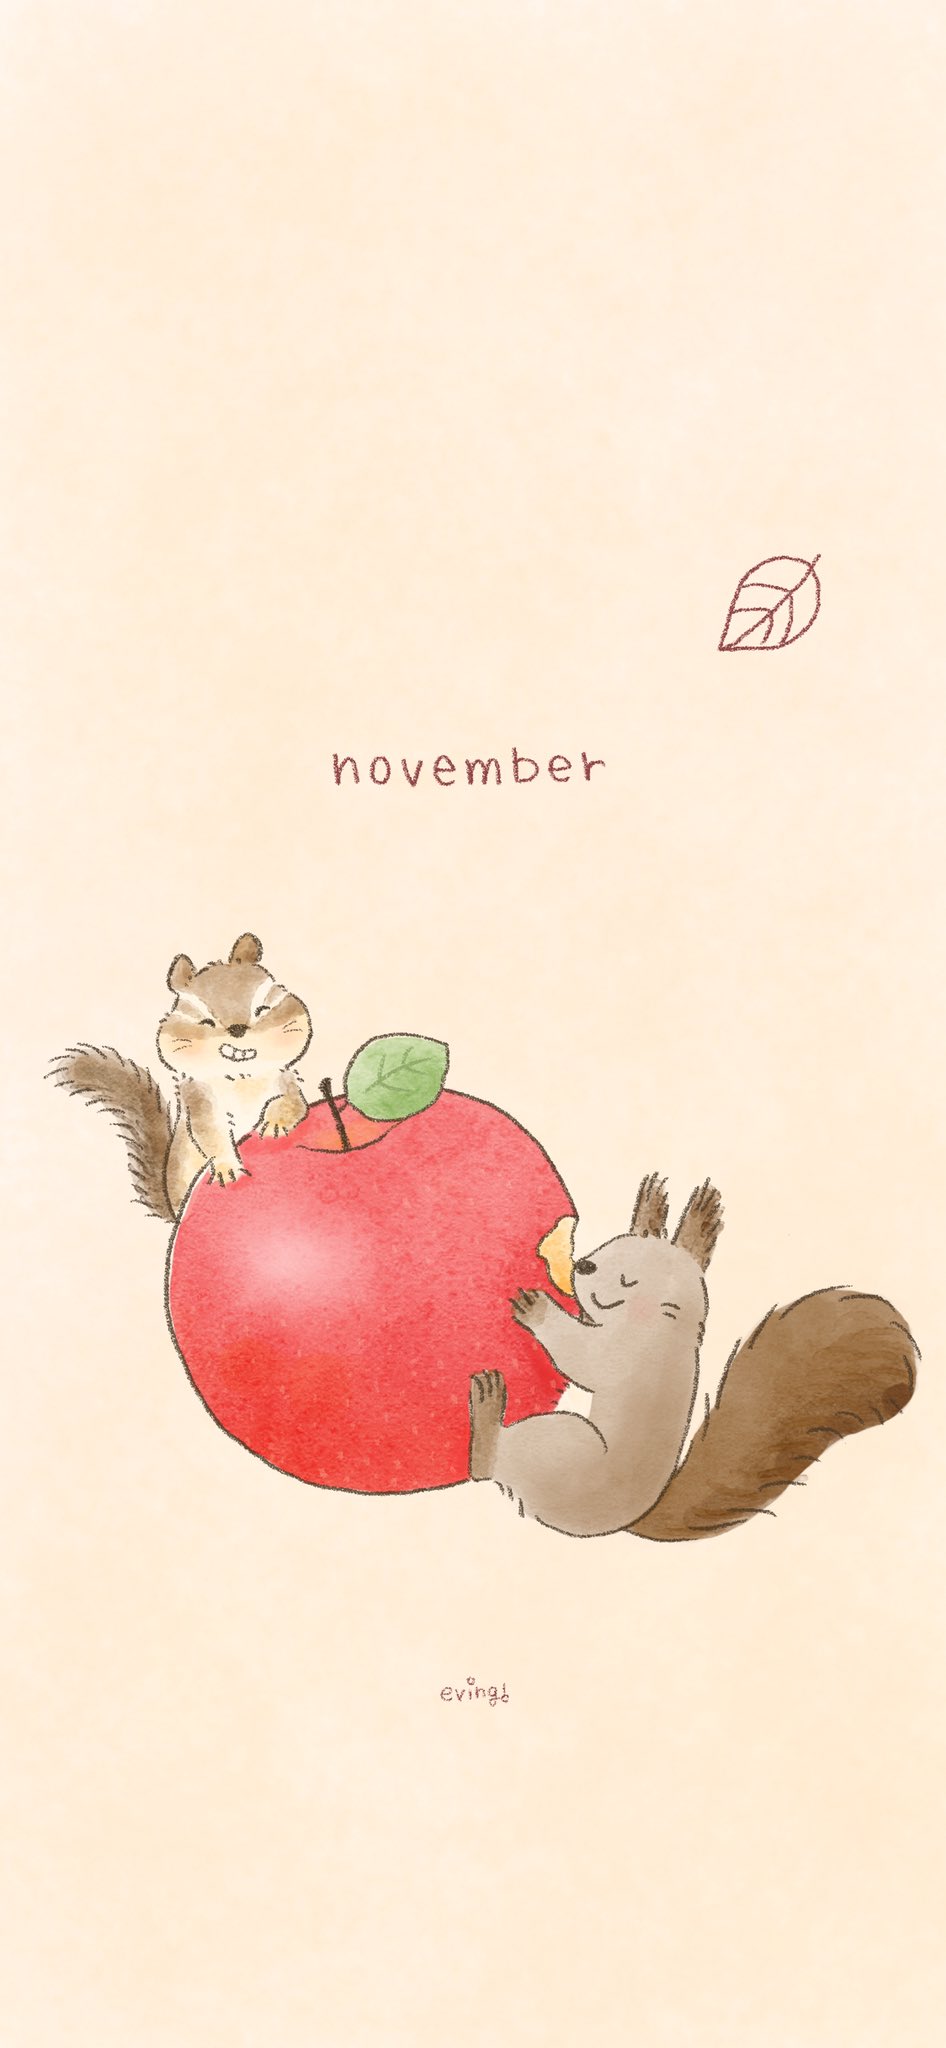 えびんぐ イラストレーター 11月スマホ壁紙配布 11月はりんごとリスのイラストです ホームページでは昨年の11月壁紙も無料ダウンロードできますのでぜひチェックしてみてください T Co Cncrjhnmqi 11月 11月壁紙 November スマホ